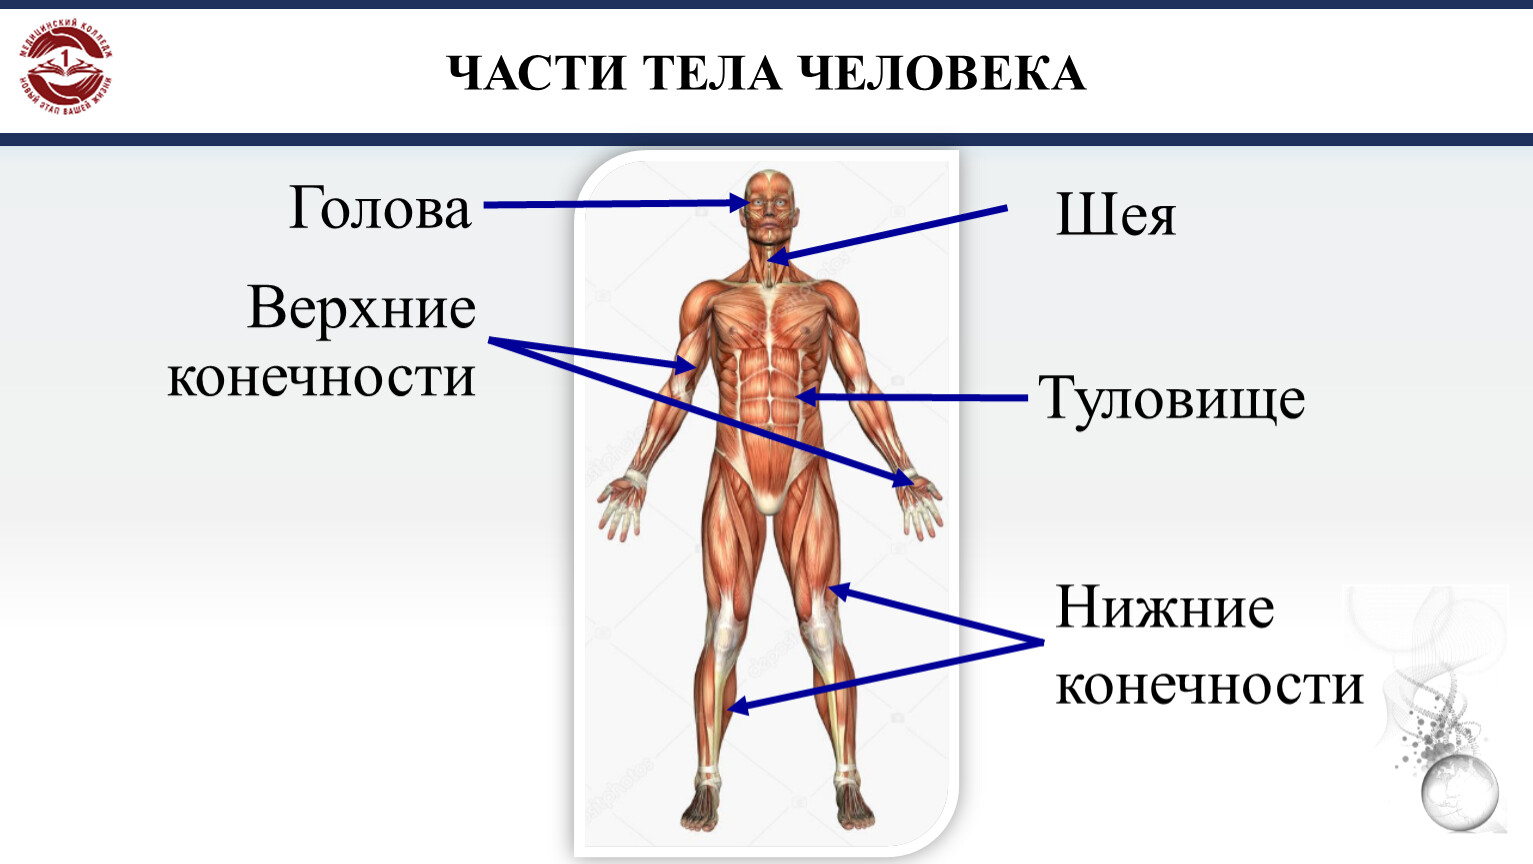 Выберите части тела человека. Части тела человека. Части тела человека названия. Название человеческих частей тела. Анатомия человека части тела названия.